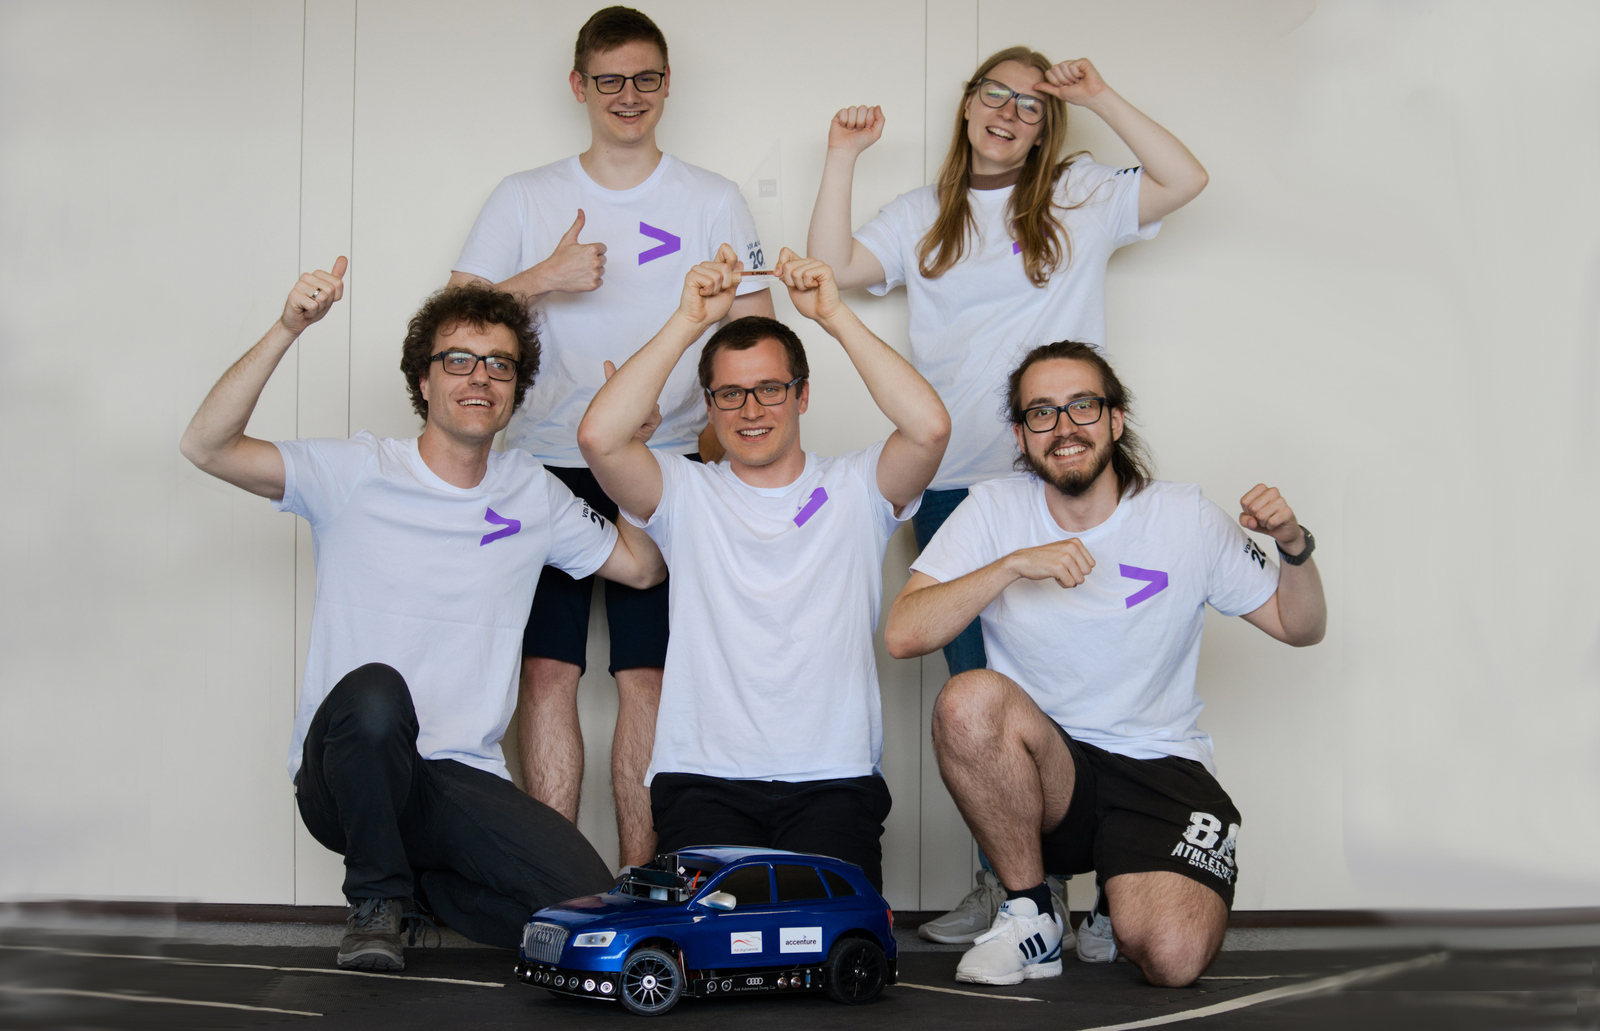 Gruppenbild der jubelnden Teammitglieder, die in München dabei waren, mit Auto